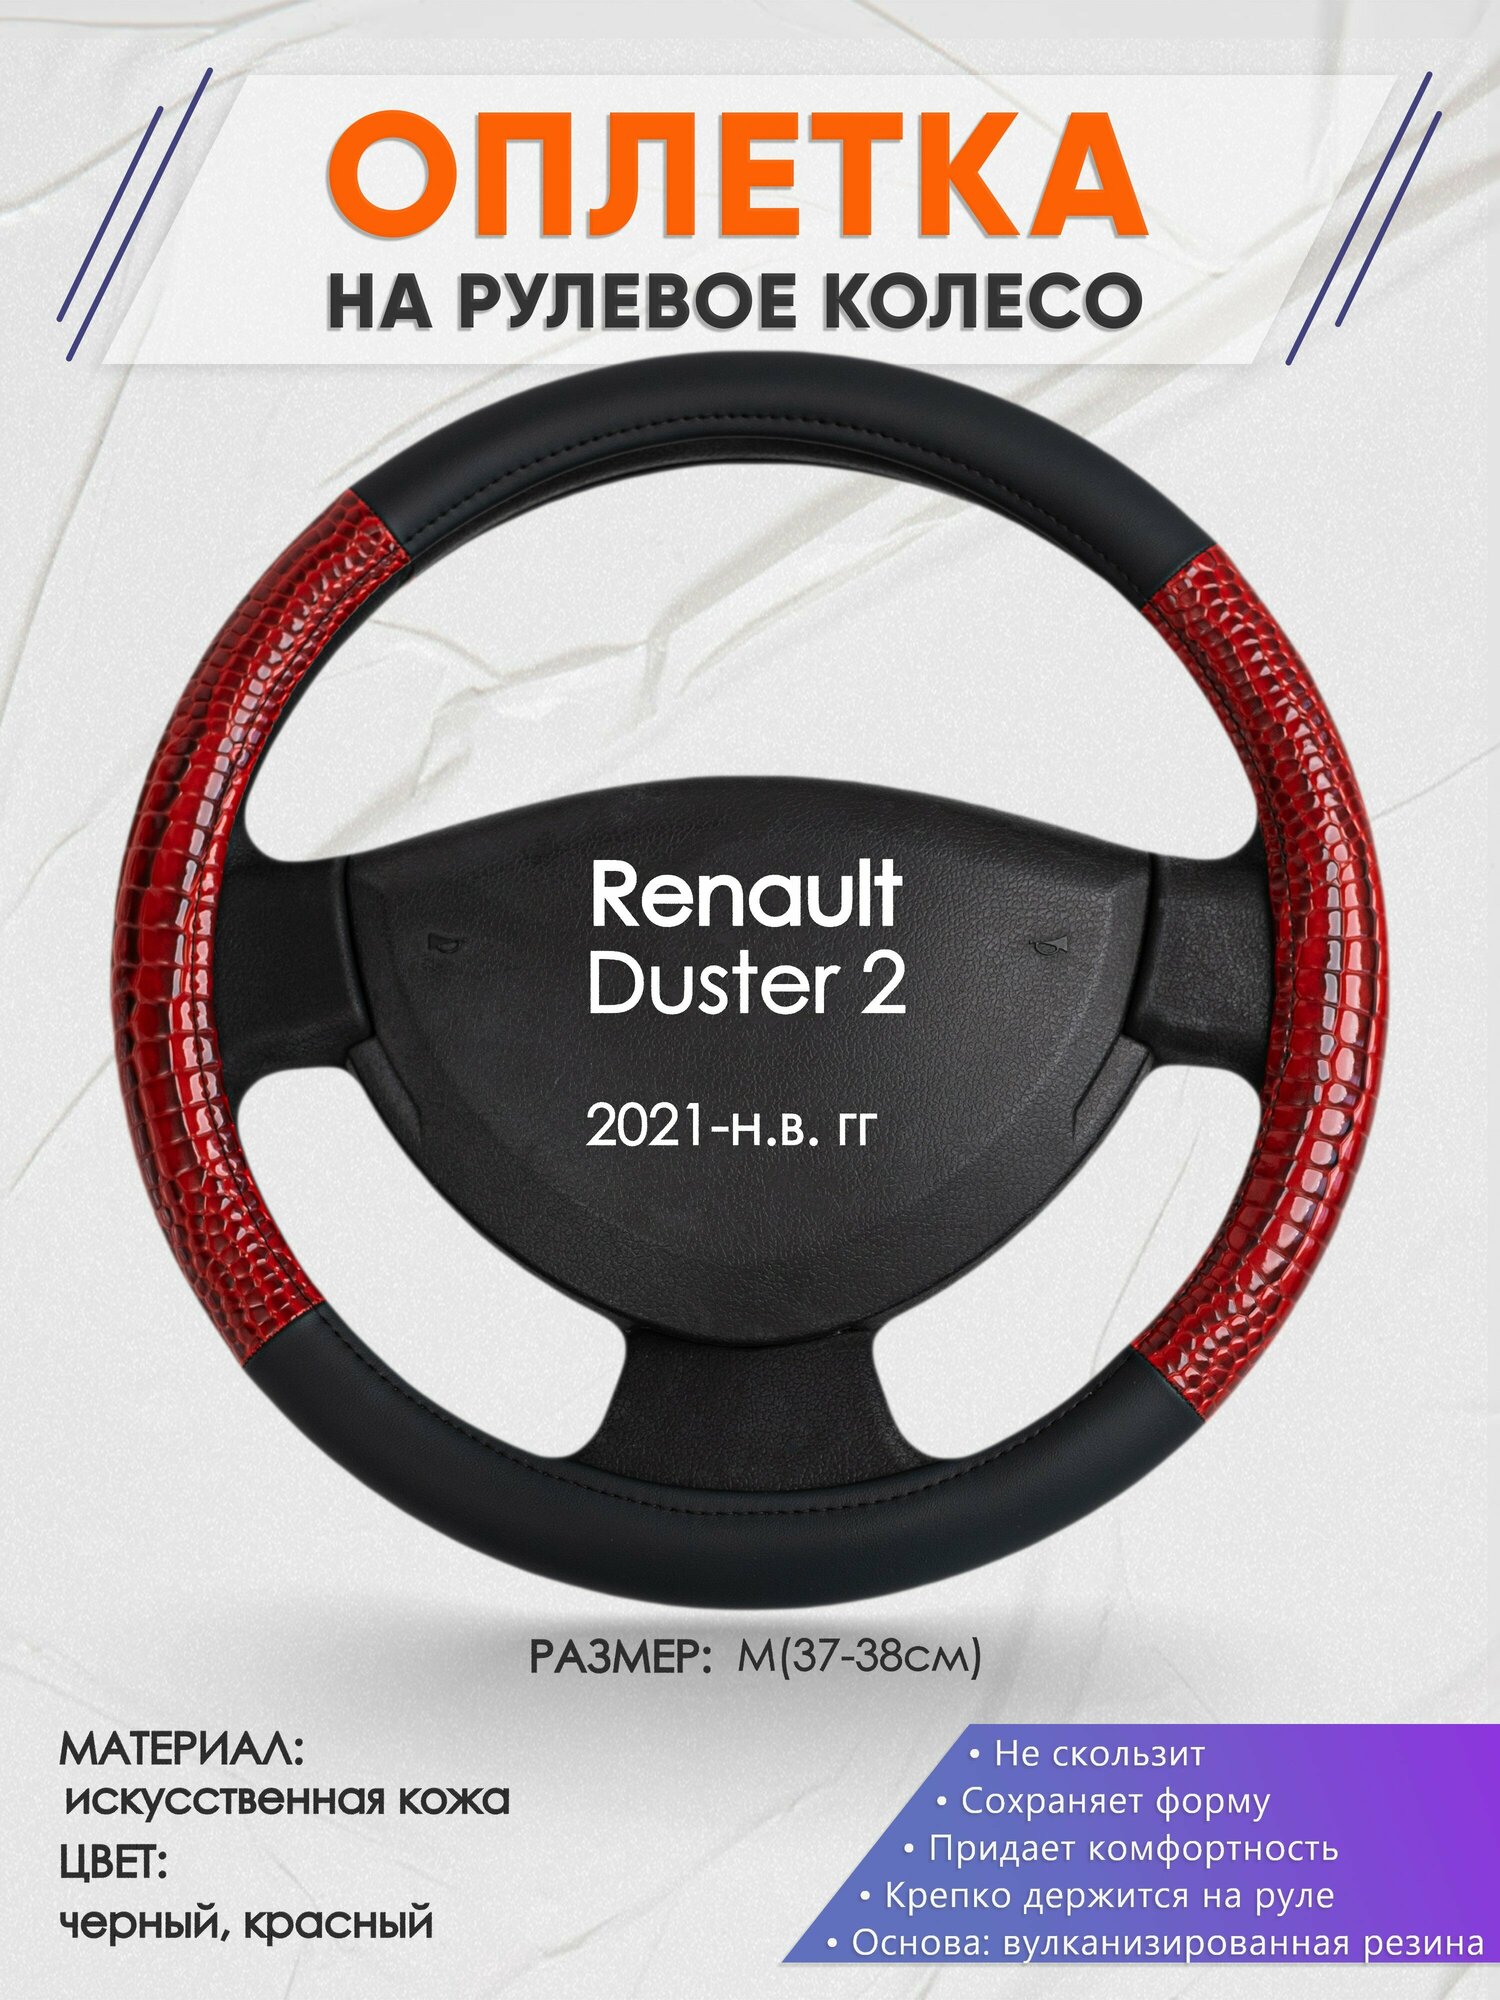 Оплетка на руль для Renault Duster 2(Рено Дастер 2) 2021-н. в M(37-38см) Искусственная кожа 15